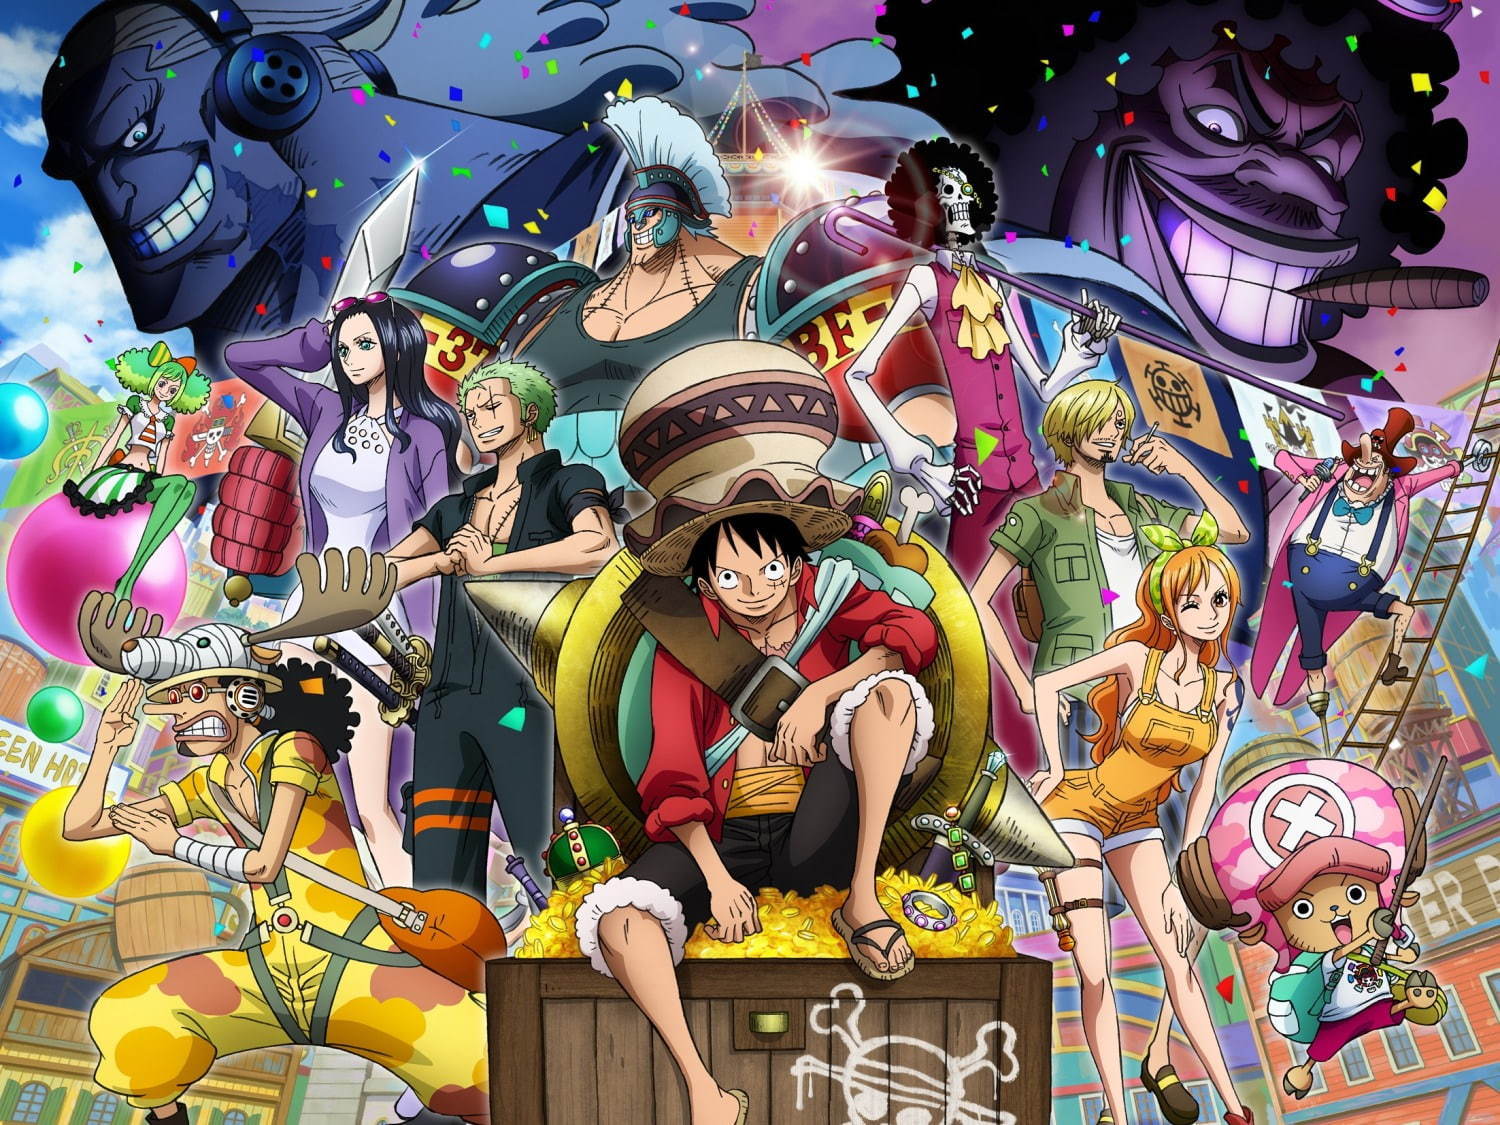 劇場版 One Piece Stampede 19年公開 彷徨える旅人のff日記 楽天ブログ